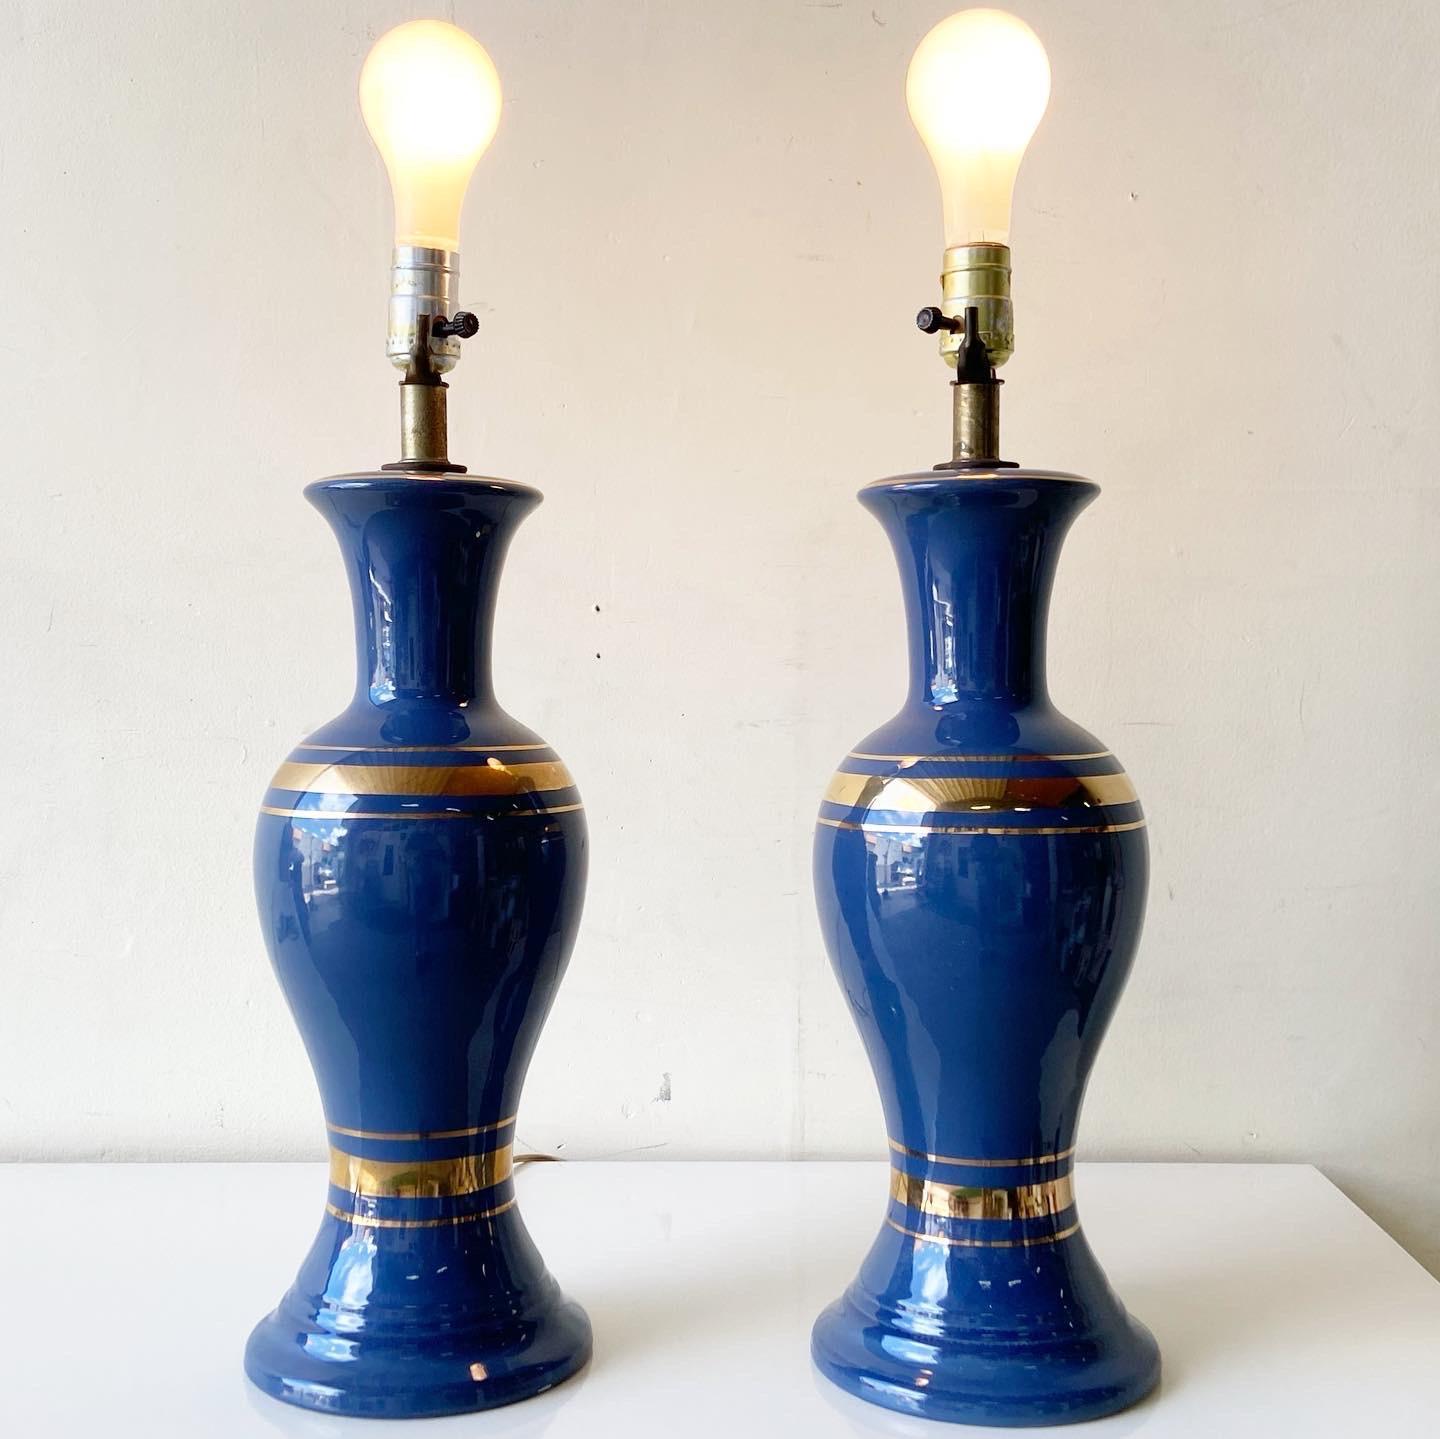 Exceptionnelle paire de lampes de table de style moderne du milieu du siècle. Chacun d'entre eux présente un vase bleu avec des anneaux dorés.

Éclairage à 3 voies.